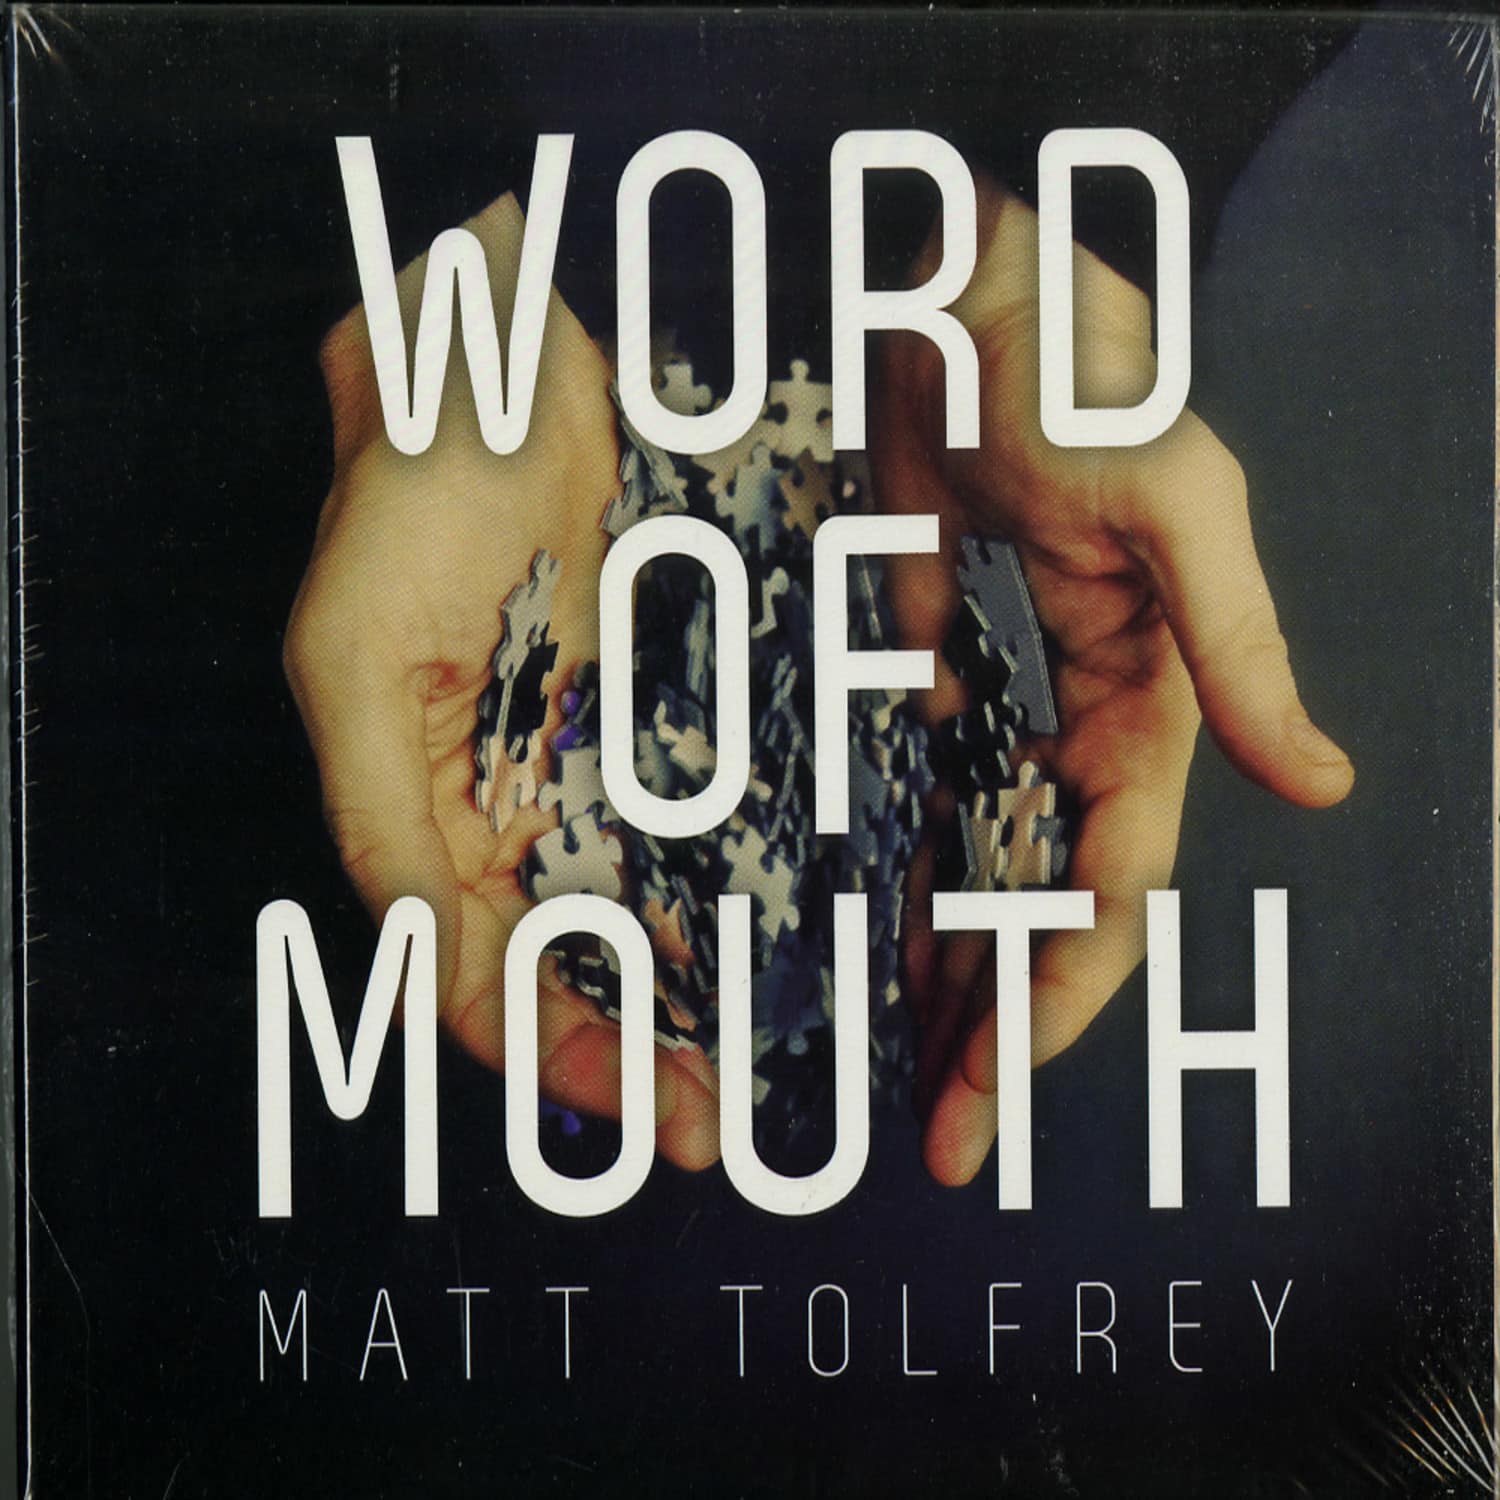 MATT TOLFREY - WORD OF MOUTH 